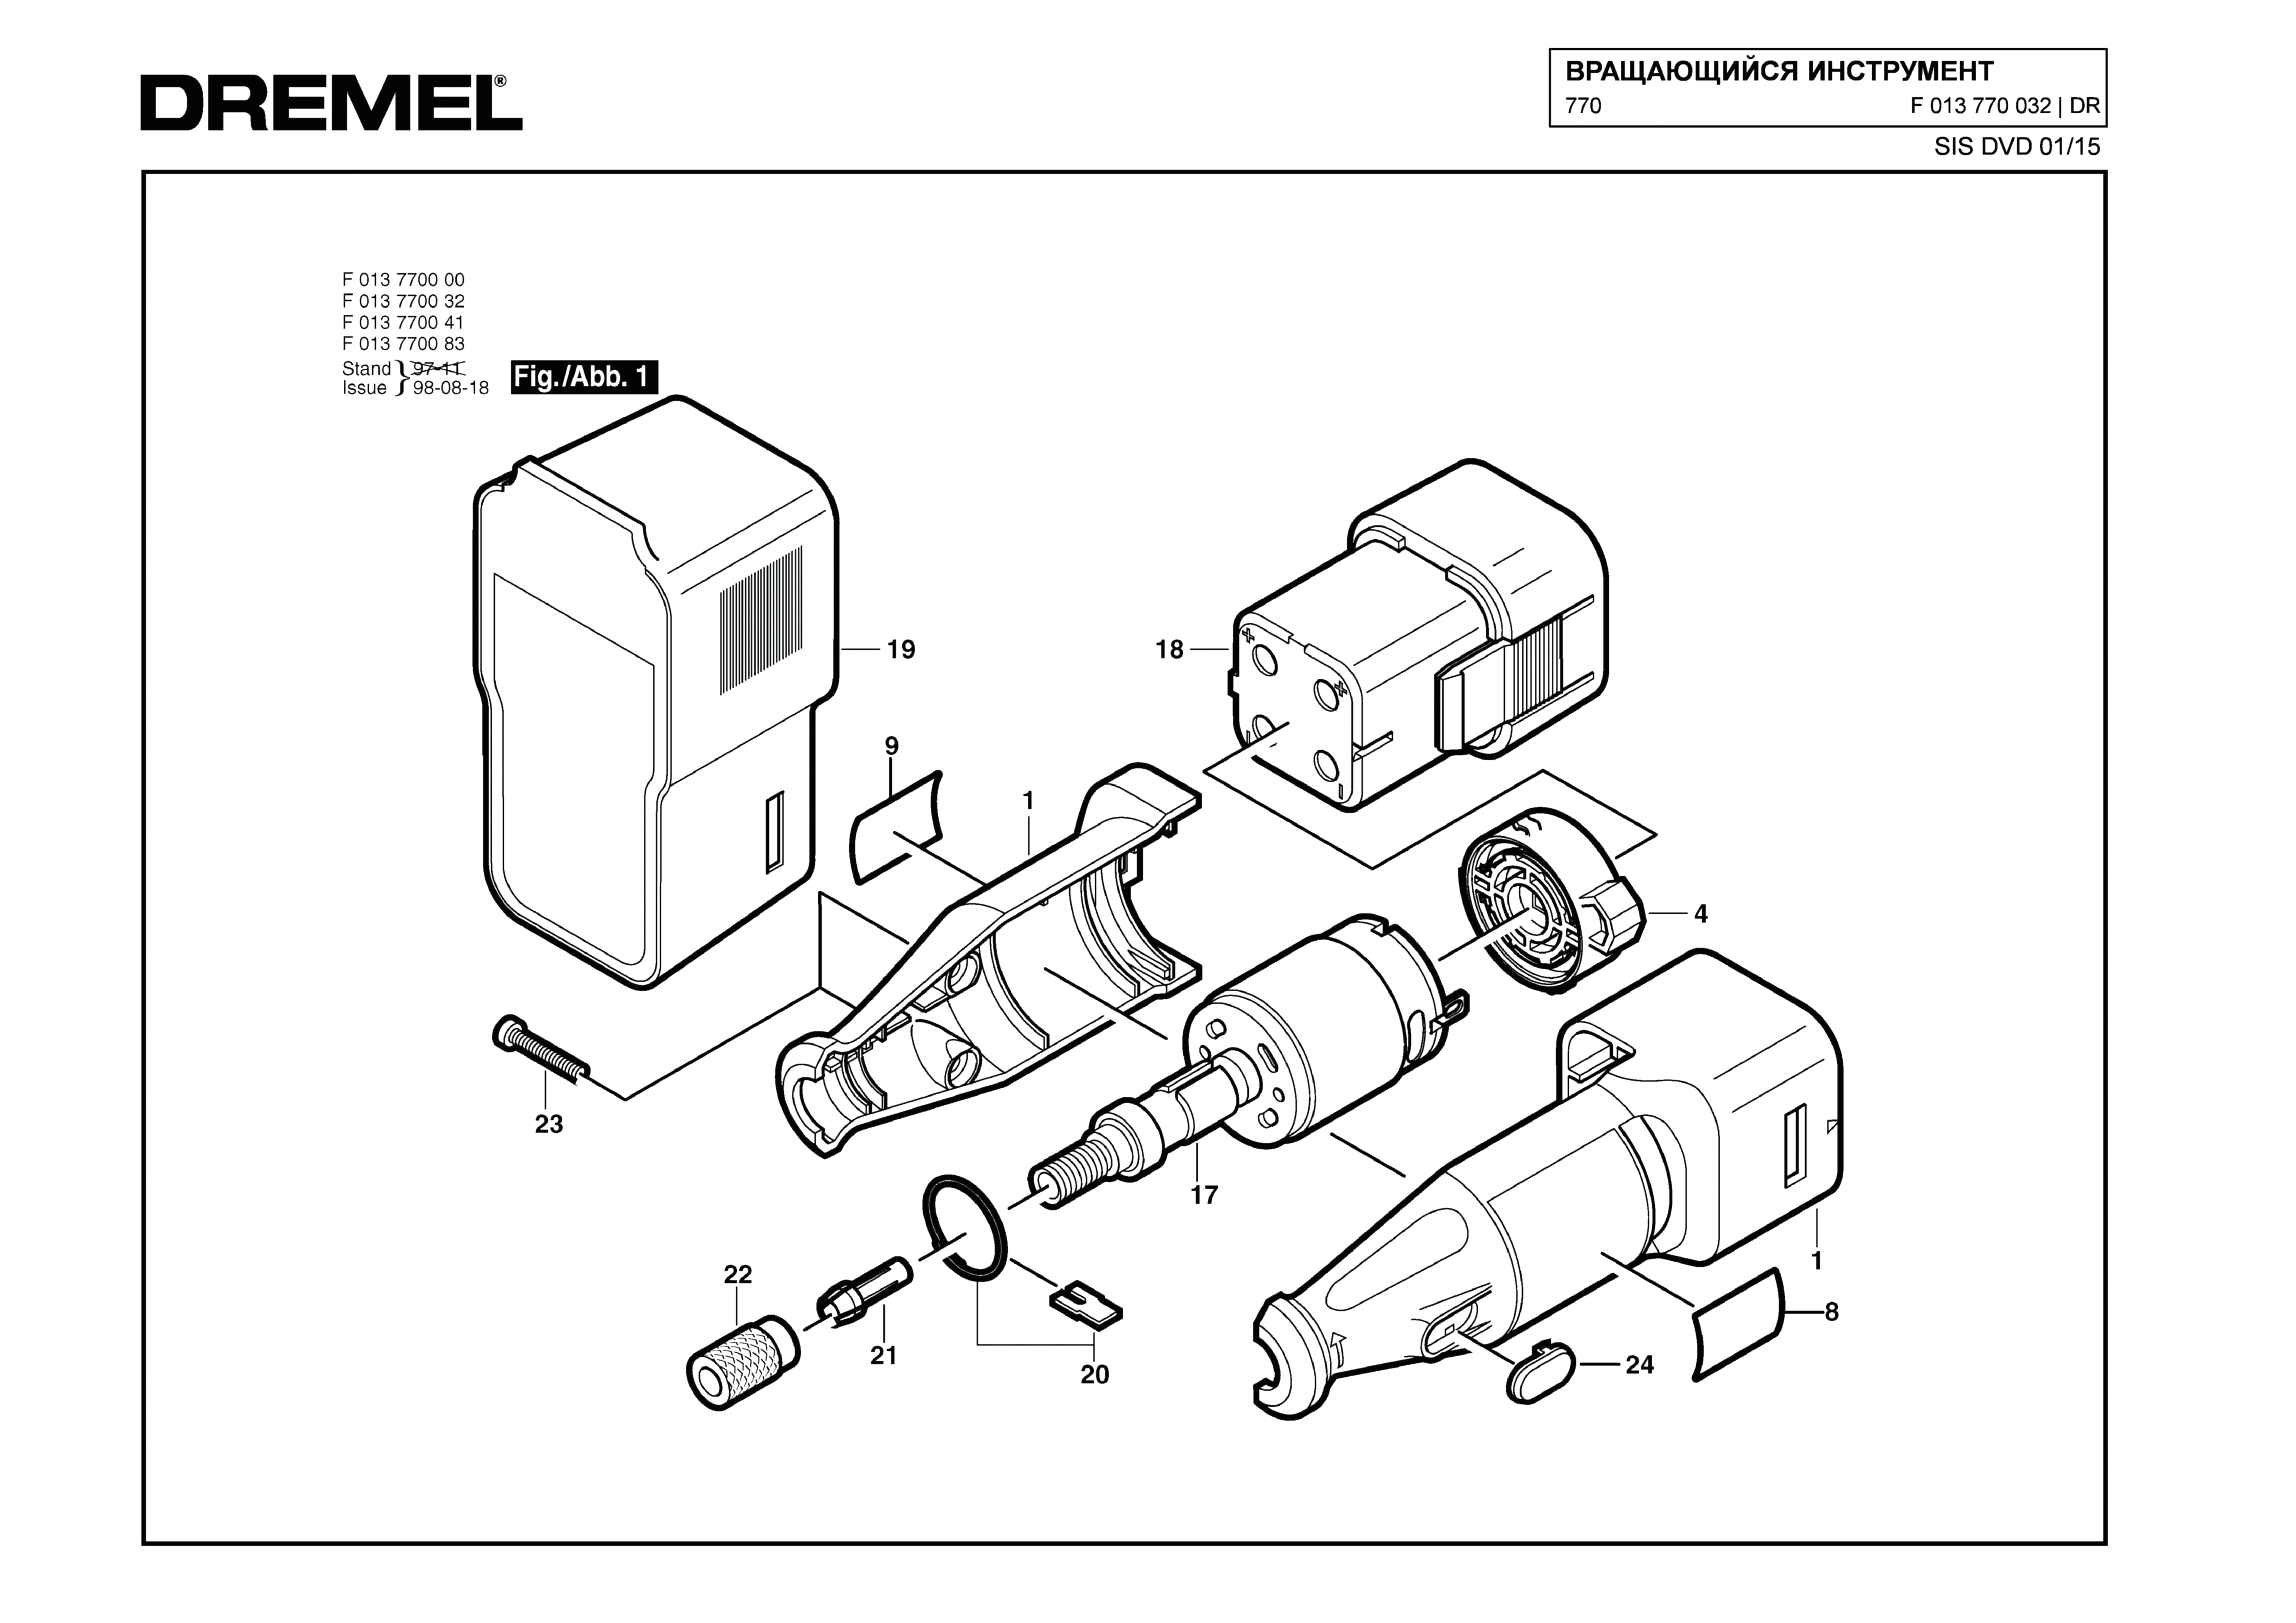 Шлифовальная машина Dremel 770 (ТИП F013770032)